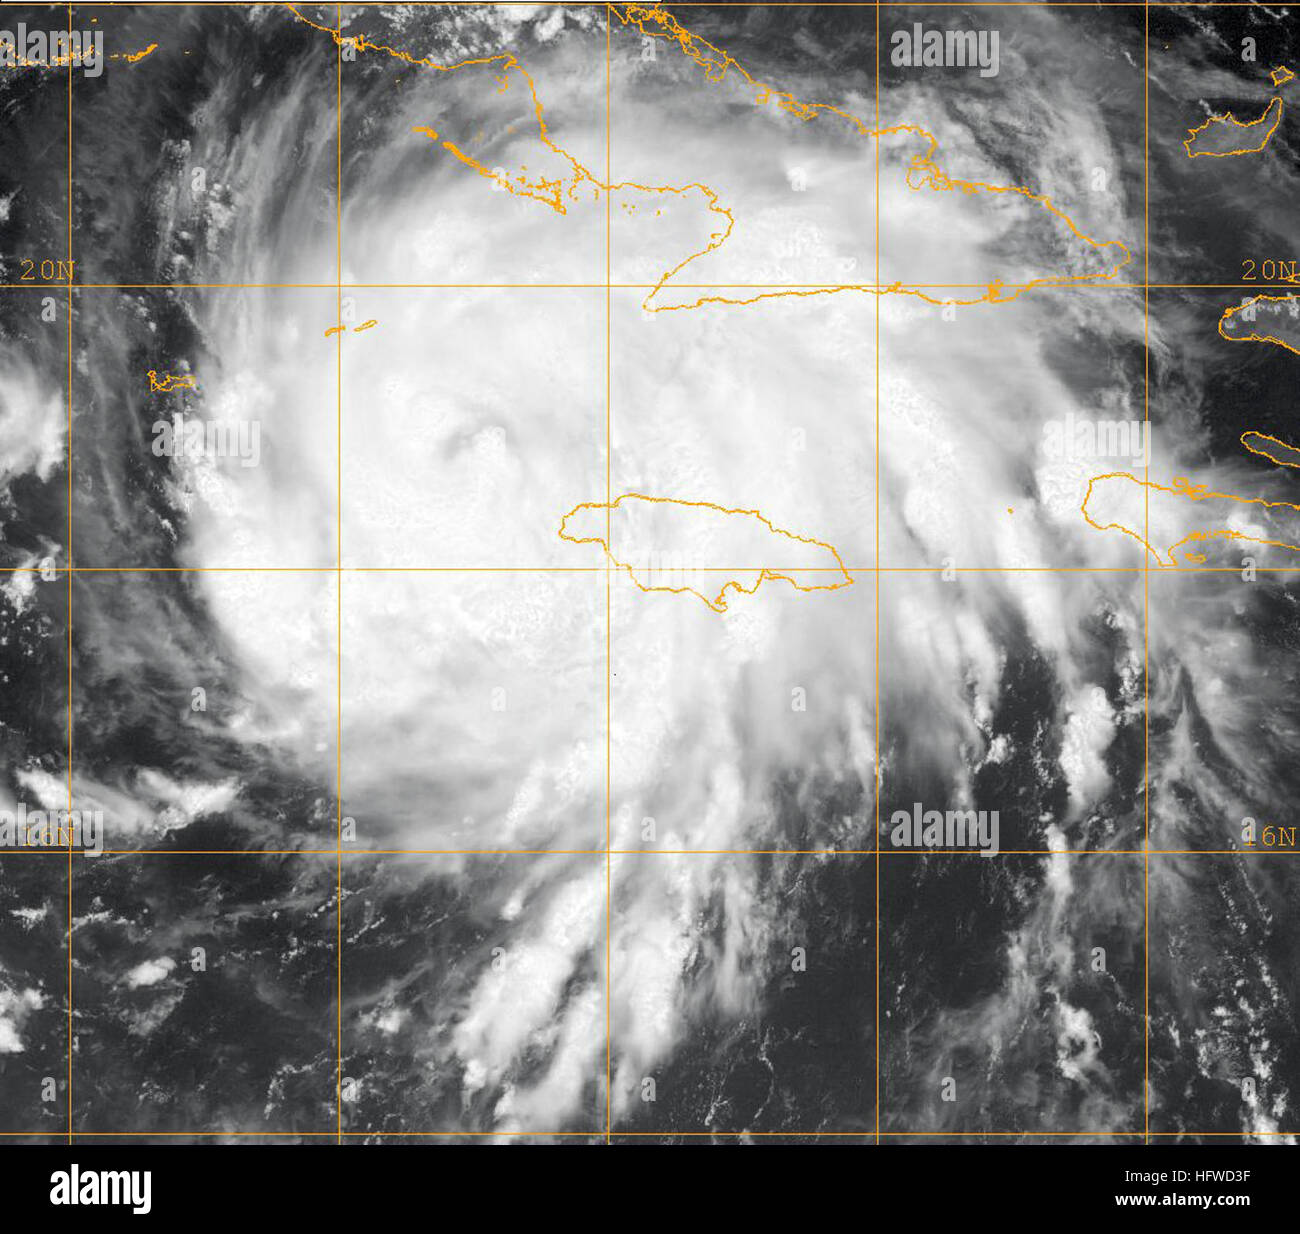 080829-N-0000W-001 Karibik (29. August 2008) A GOES-12 Infrarot-Satellitenbild von US Naval Research Laboratory, Monterey, Kalifornien, mit dem Status der Tropensturm Gustav um ca. 11 Uhr EST, dass Gustav ist ein tropischer Sturm auf der Saffir-Simpson Hurrikan-Skala, mit maximalen Windgeschwindigkeiten in der Nähe von 65 km/h und höheren Böen zur Verfügung gestellt. Der Sturm ist derzeit in der Karibik Meer. Der Sturm bewegt sich mit seiner Spur dabei über der westlichen Spitze von Kuba in den Golf von Mexiko und macht Landfall irgendwo auf der US-Golfküste bis zum Montag Morgen Norden von Nordwesten bei 8 km/h. US-N Stockfoto